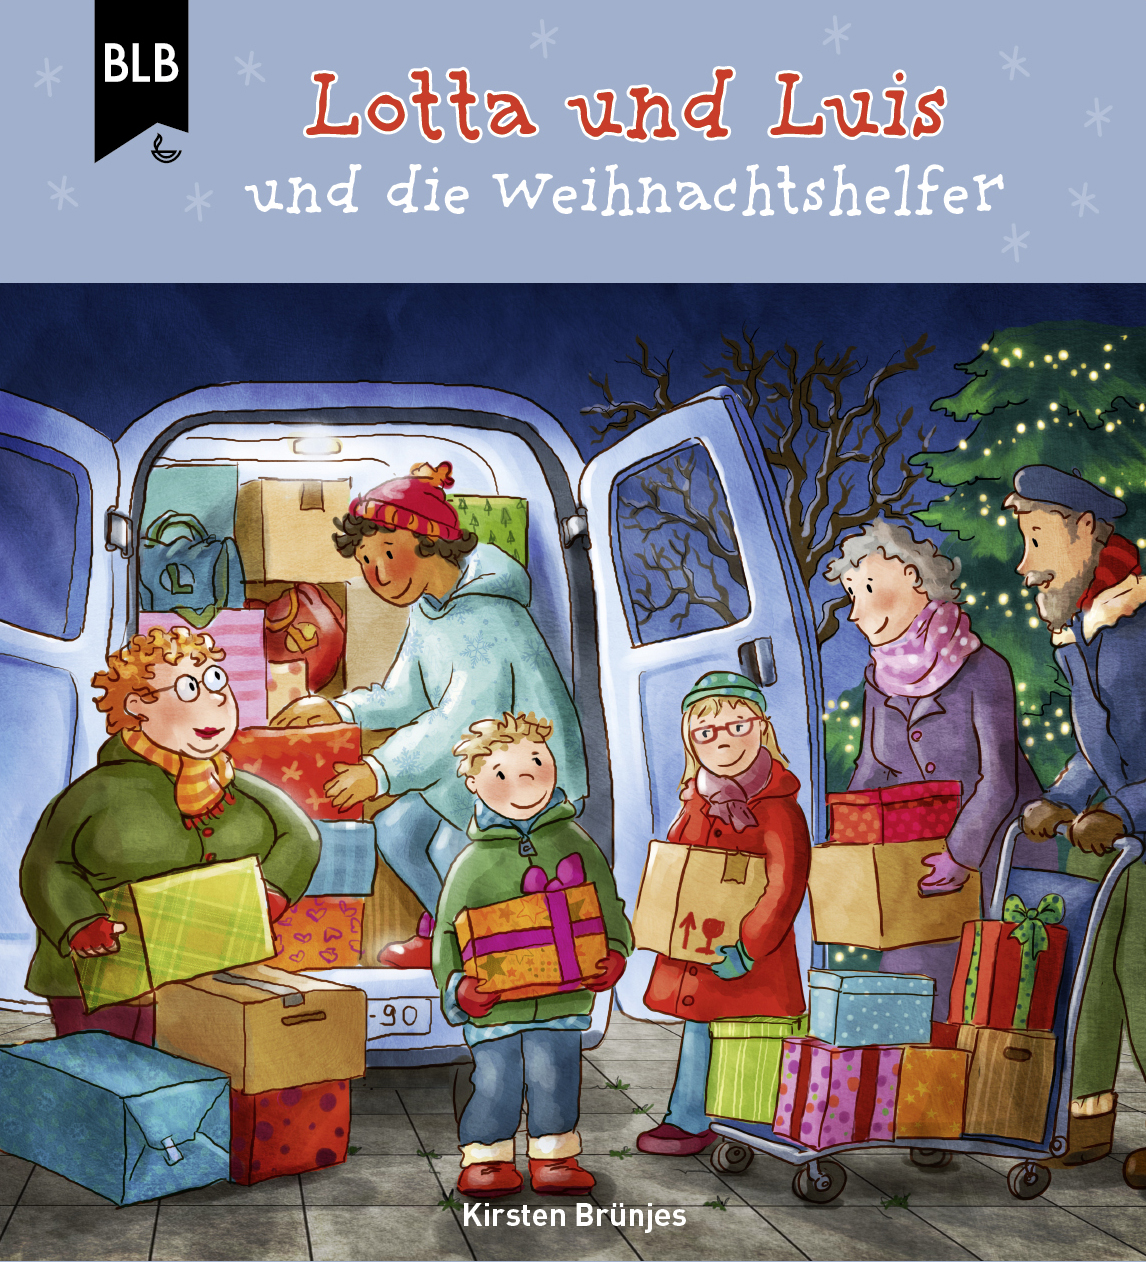 Lotta und Luis und die Weihnachtshelfer - Download